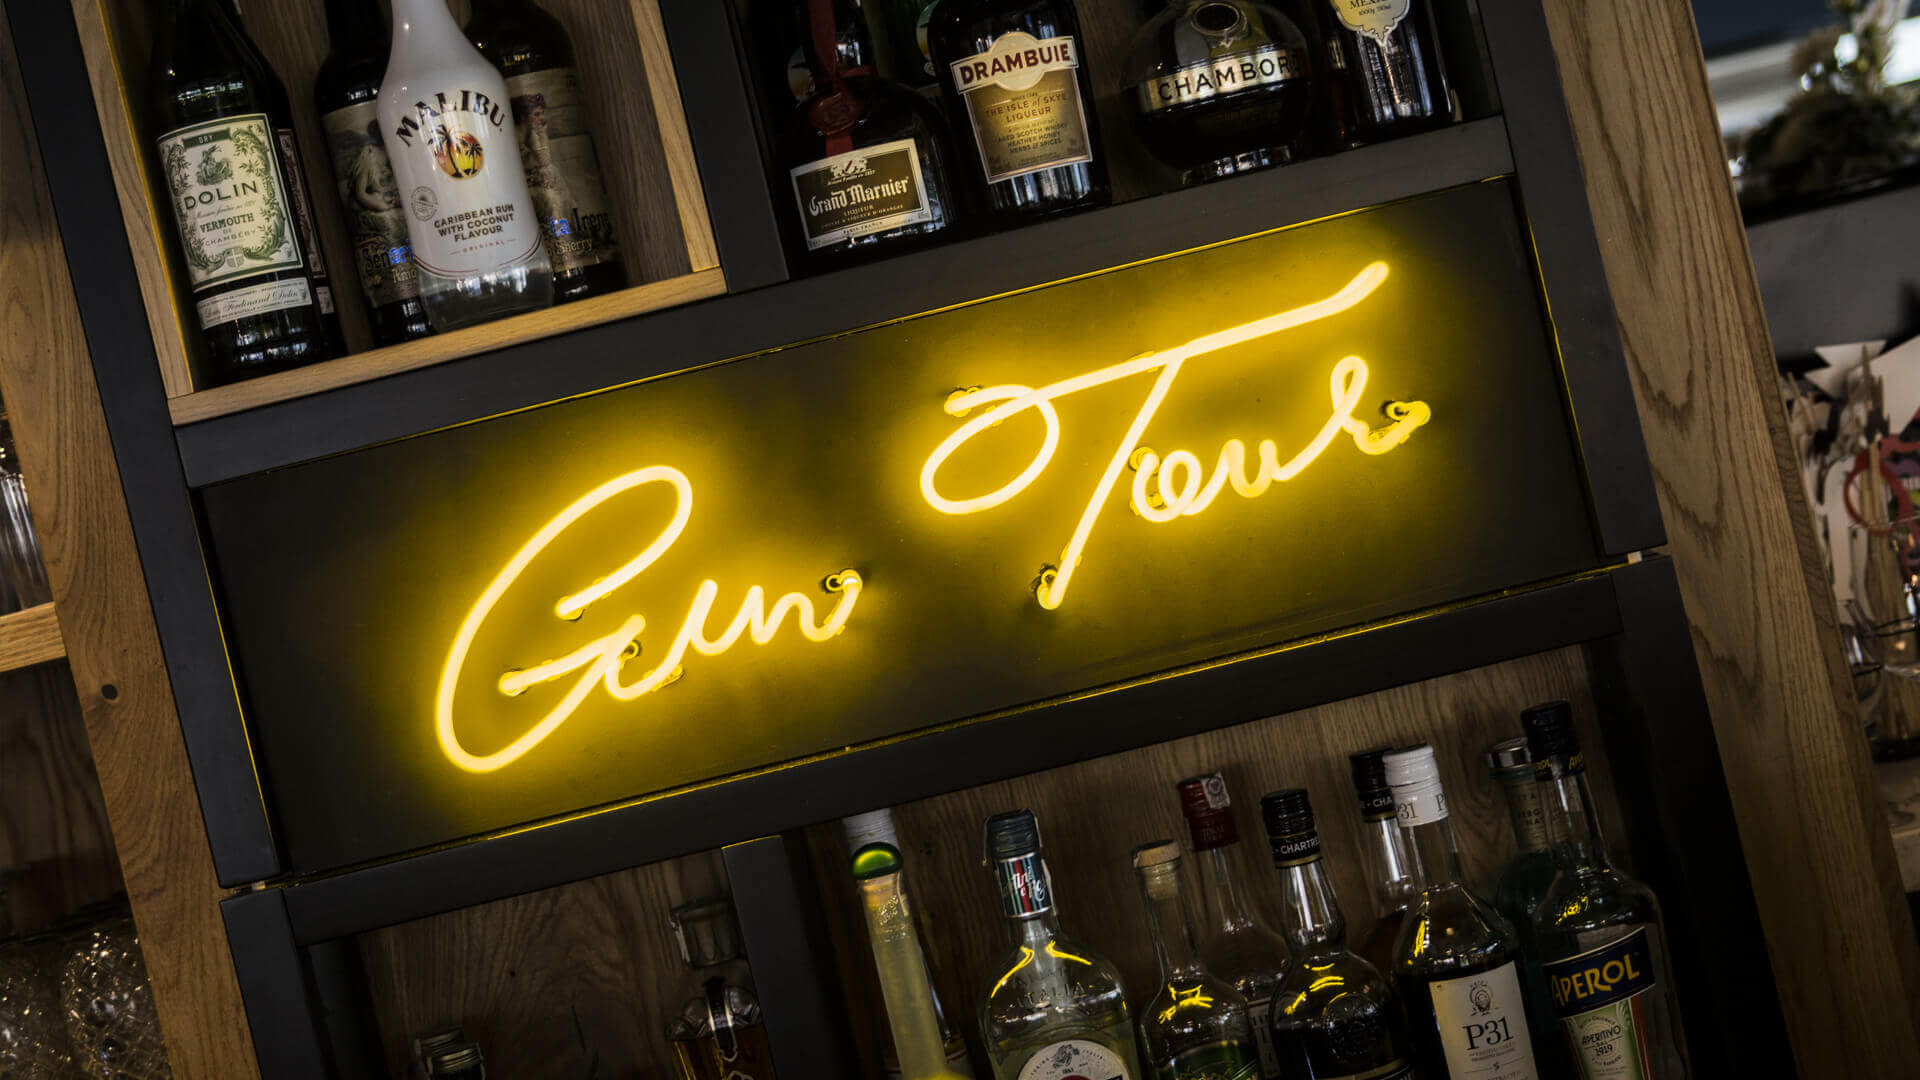 gintur Gin tour - Gin-tour-neon-za-barem-w-restauracji-neon-na-scianie-podswietlany-na-zolto-szklany-neon-logo-firmowe-neon-na-polce-pomiedzy-butelkami-szafarnia10-gdansk (21).jpg